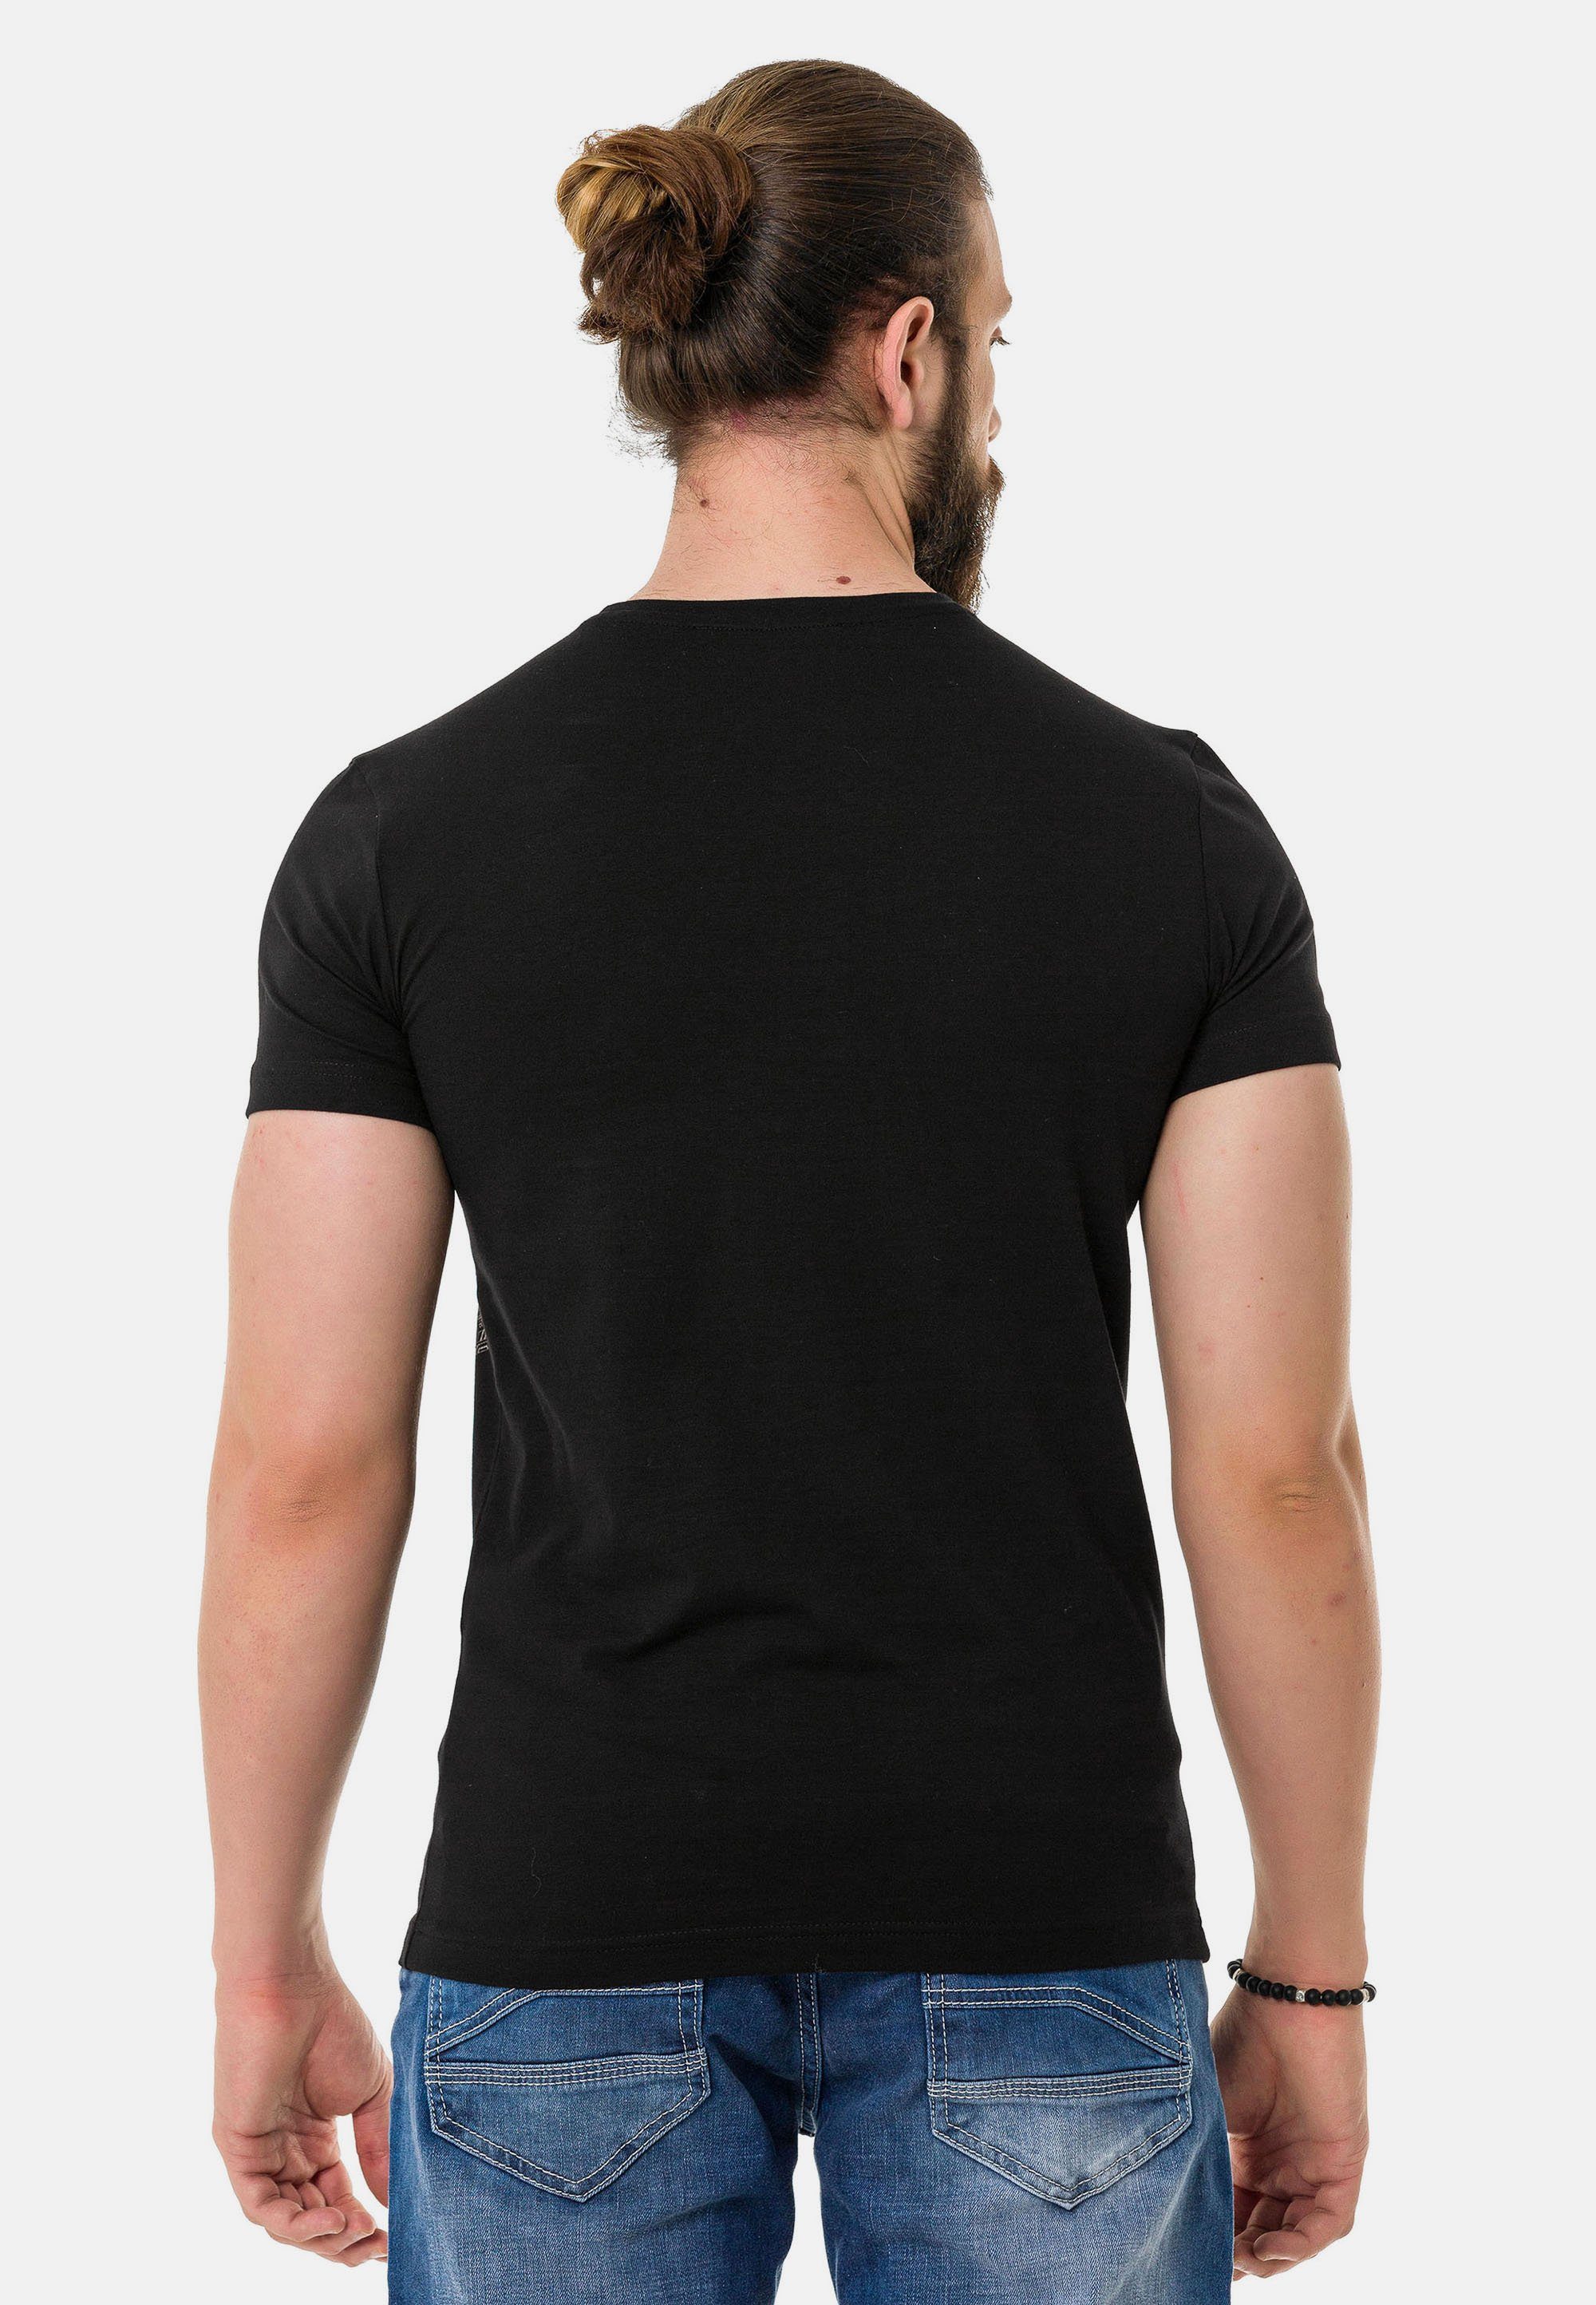 & Design Cipo Baxx T-Shirt coolem in schwarz